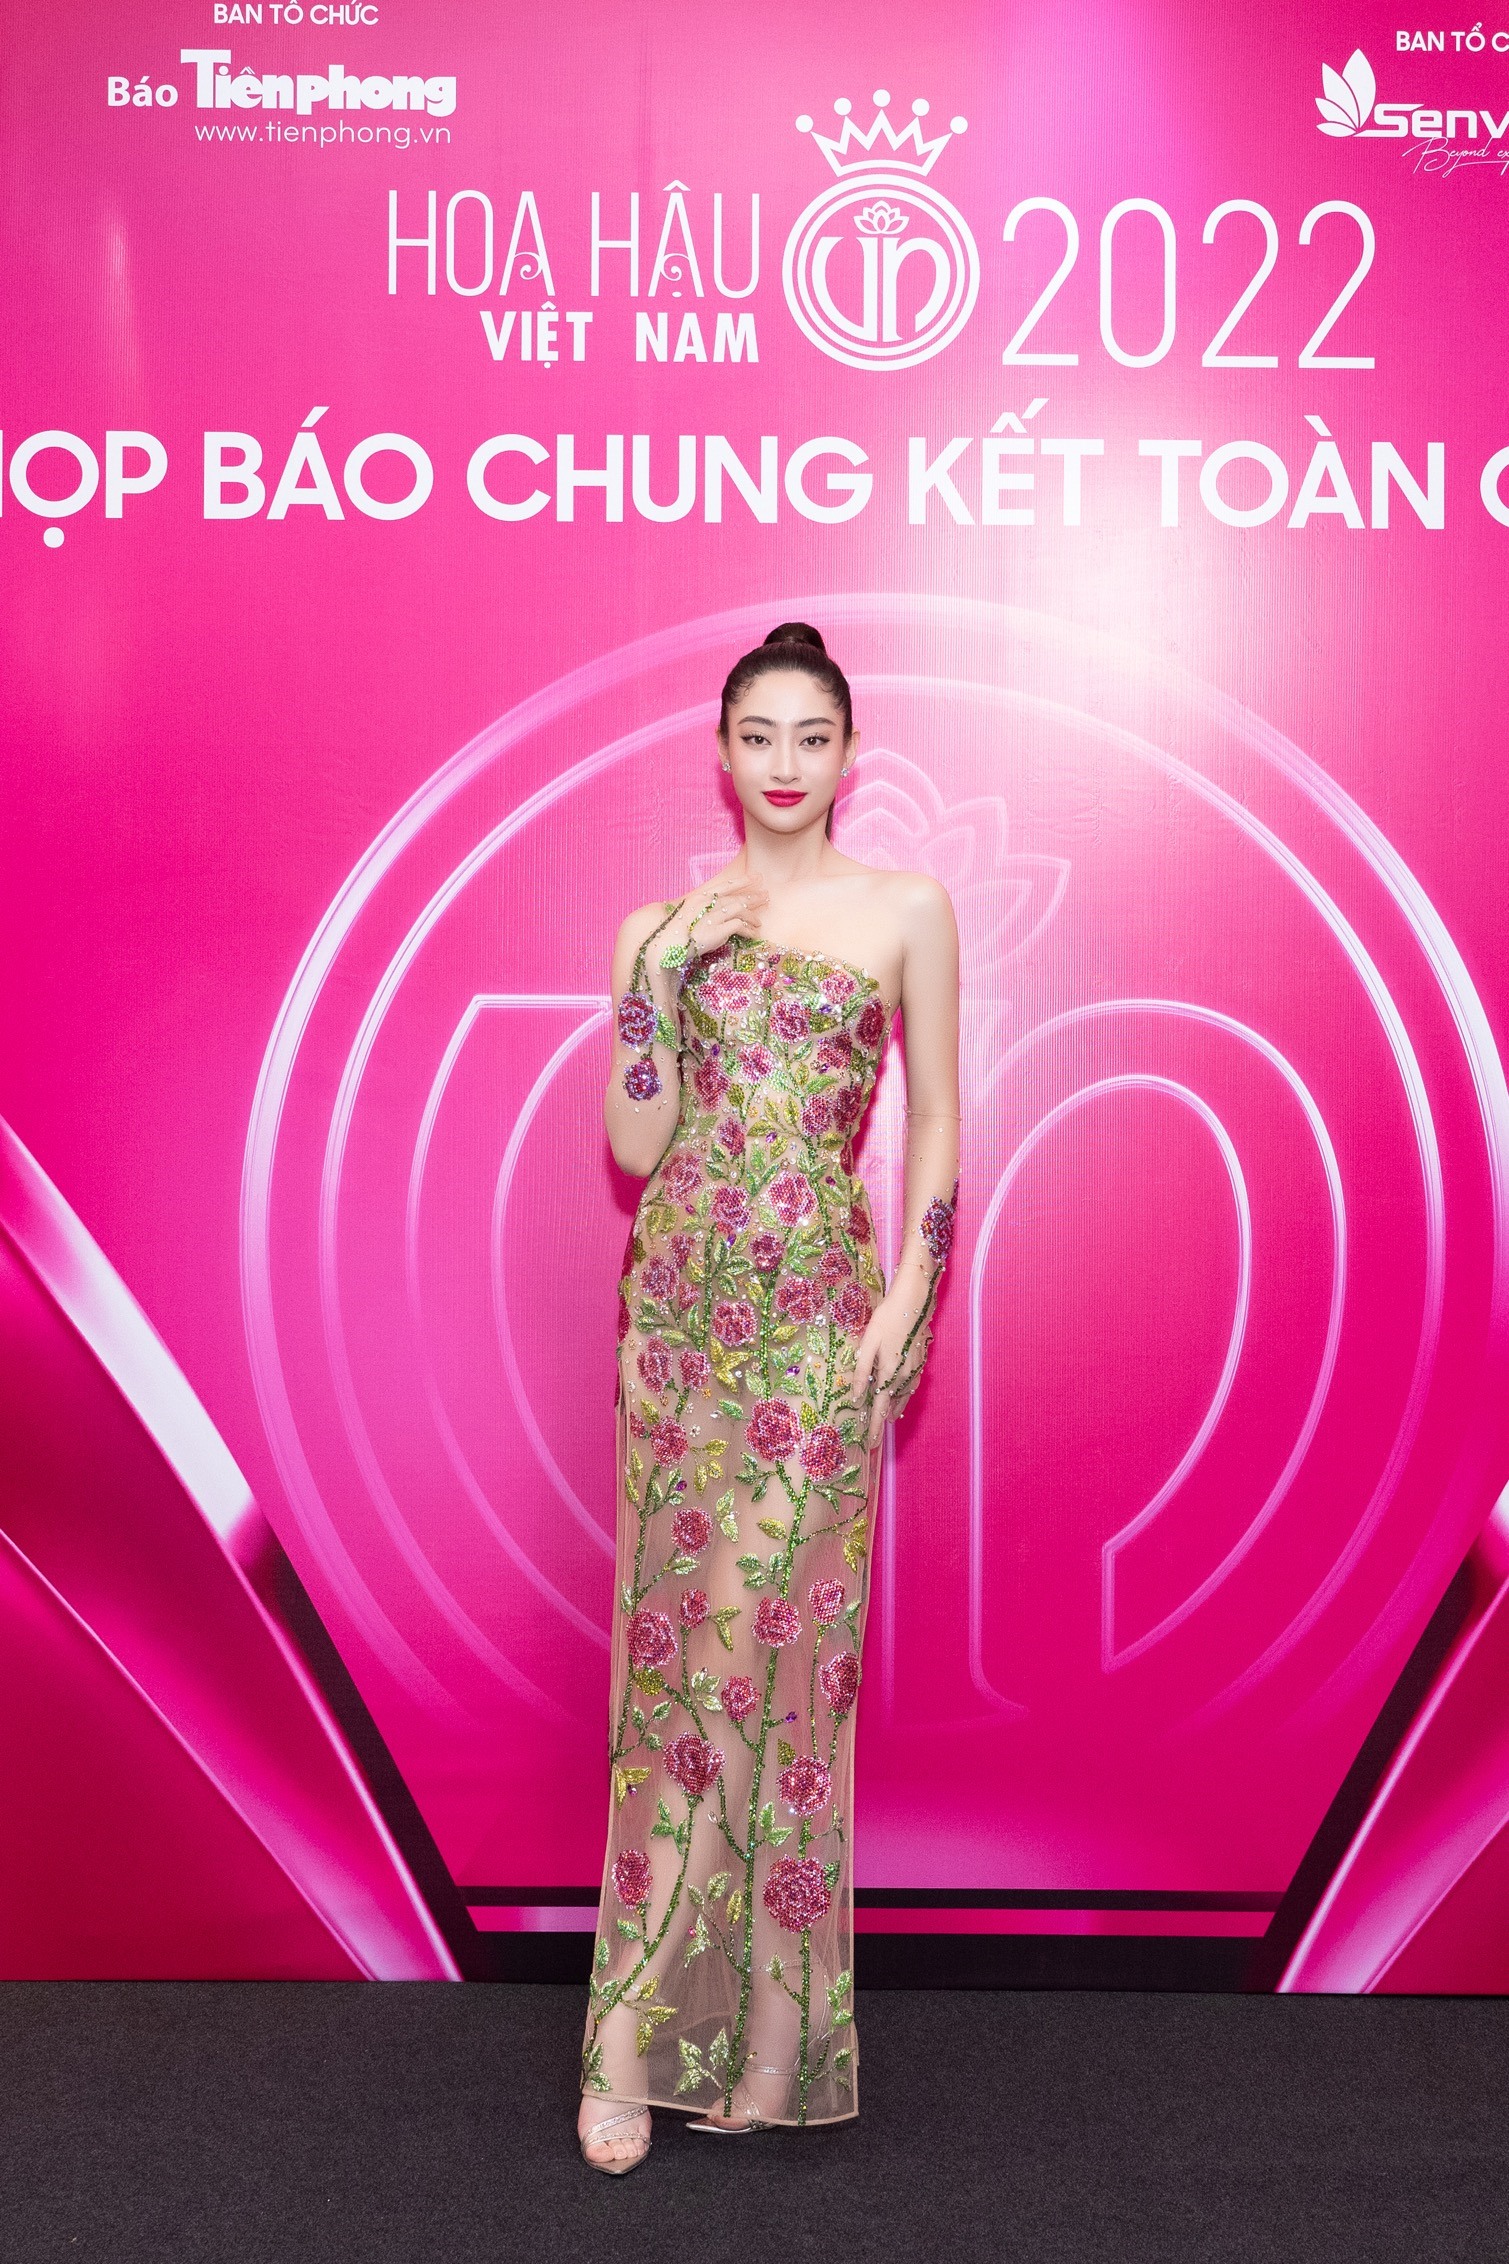 Hoa hậu Trần Tiểu Vy với gương mặt “tỷ lệ vàng” góp mặt tại thảm đỏ.  Nàng hậu khoe nhan sắc trong thiết kế sang trọng.